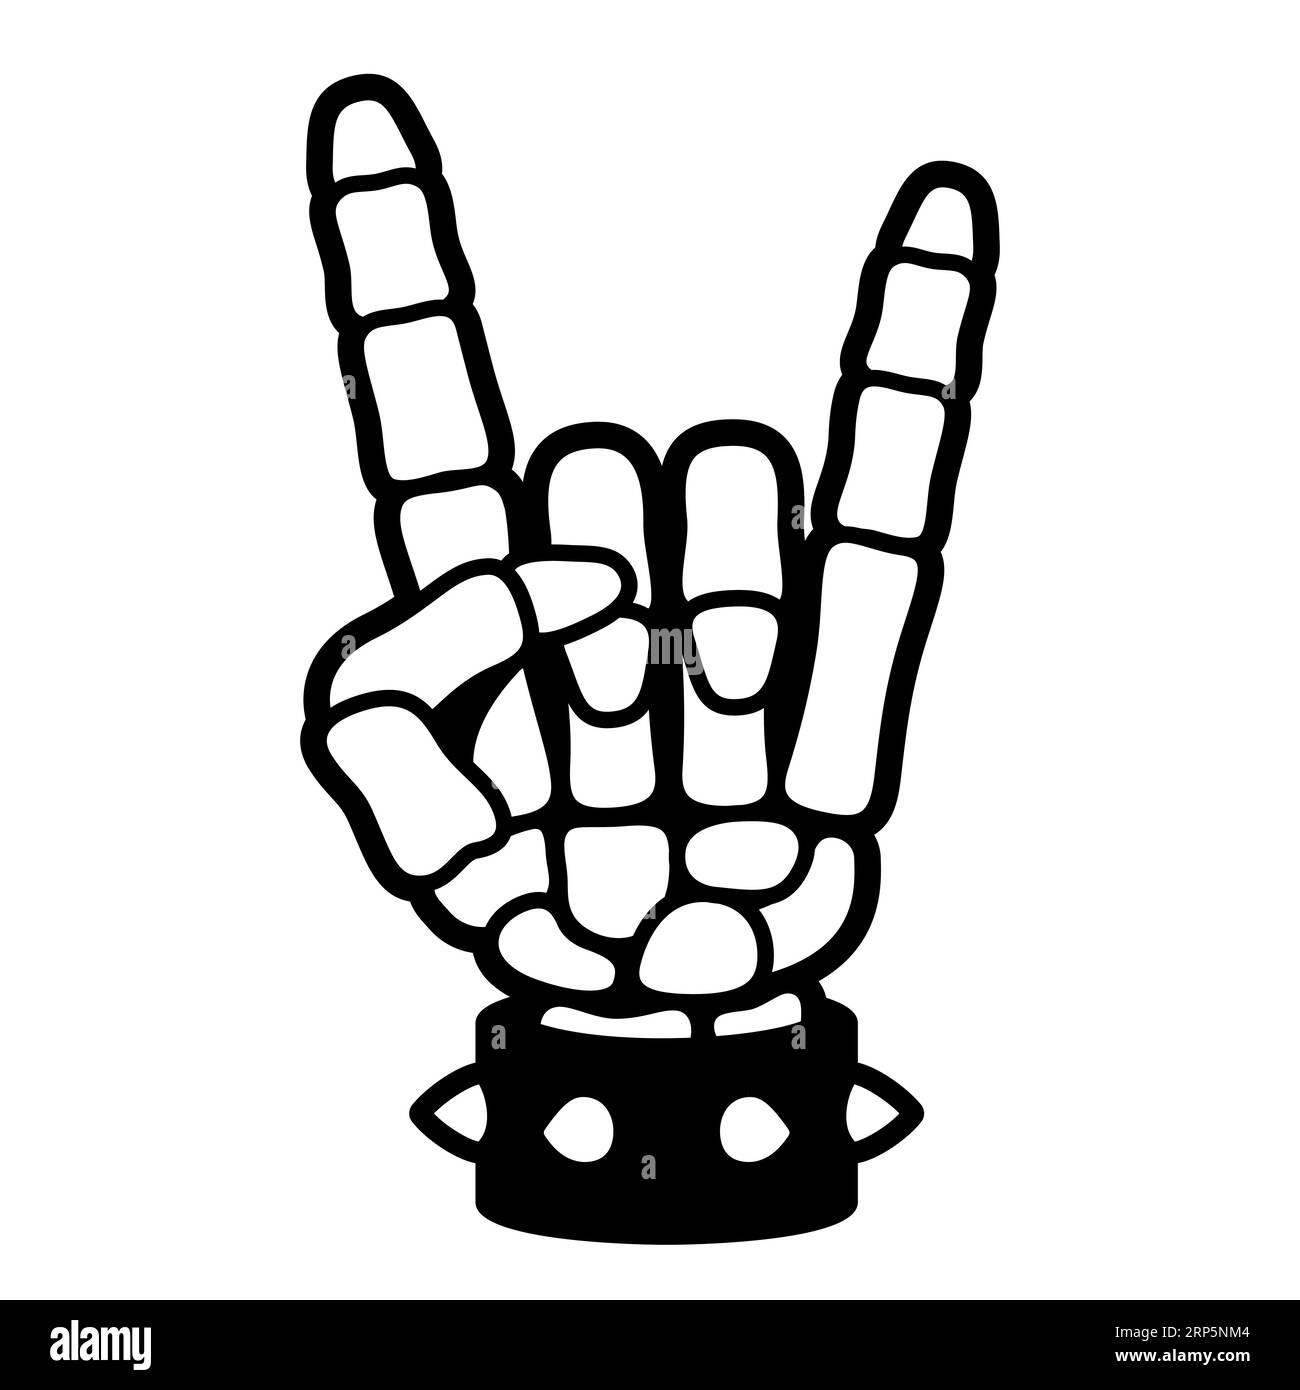 Scheletro che fa un segno di roccia. Gesto della mano heavy metal in stile fumetto. Mano appassionata di musica con braccialetto in pelle a spillo. Illustrazione vettoriale. Illustrazione Vettoriale